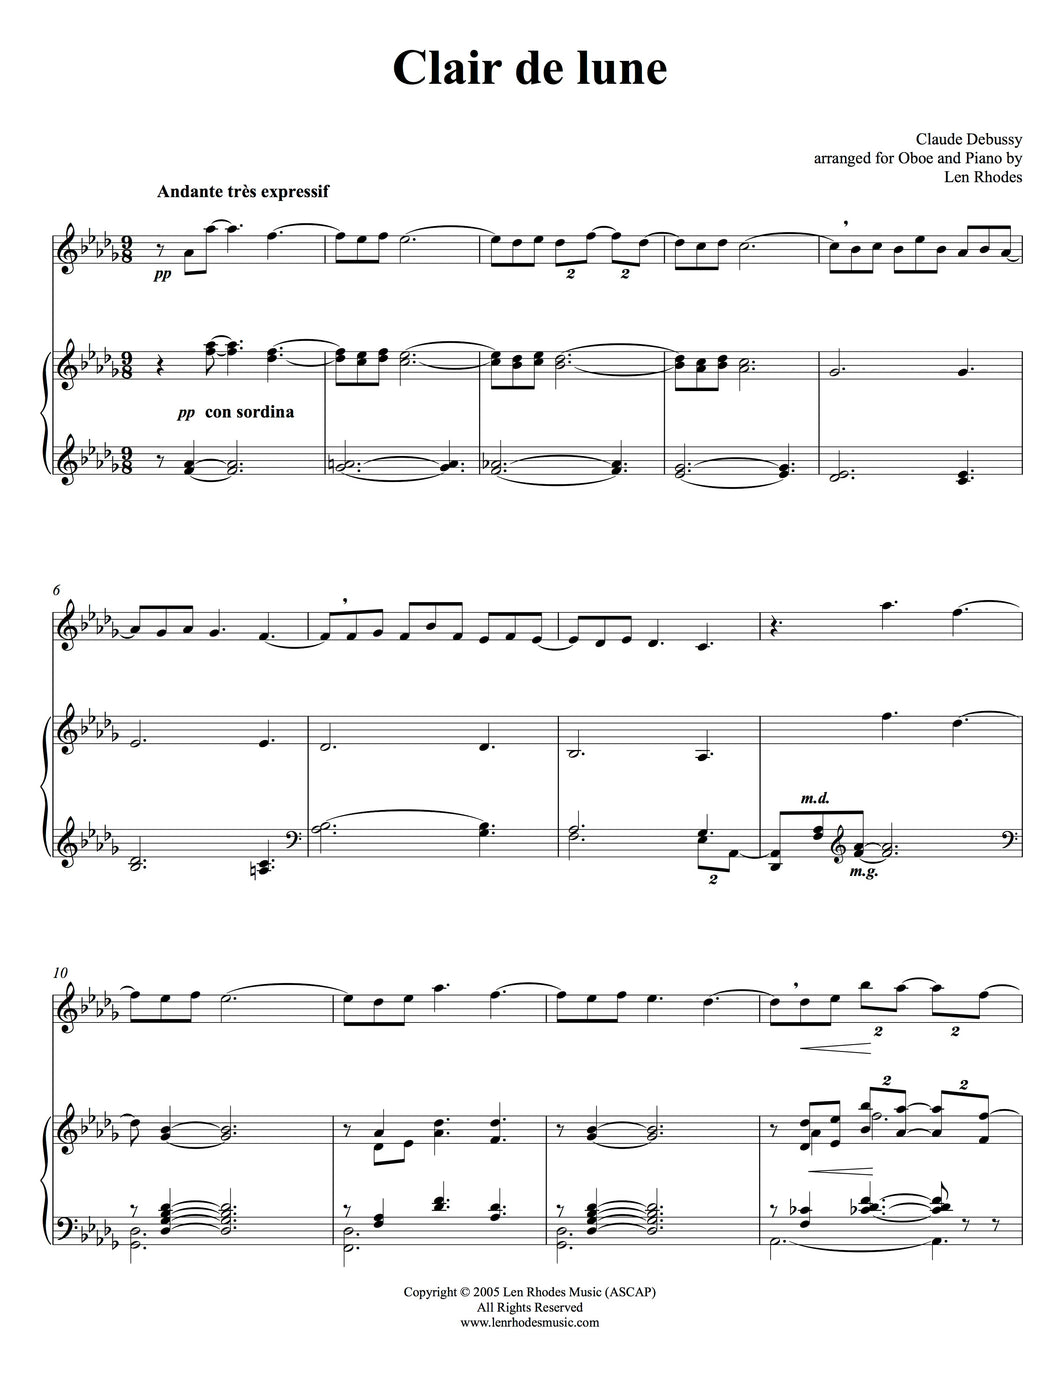 Clair de lune, Debussy - Oboe and Piano